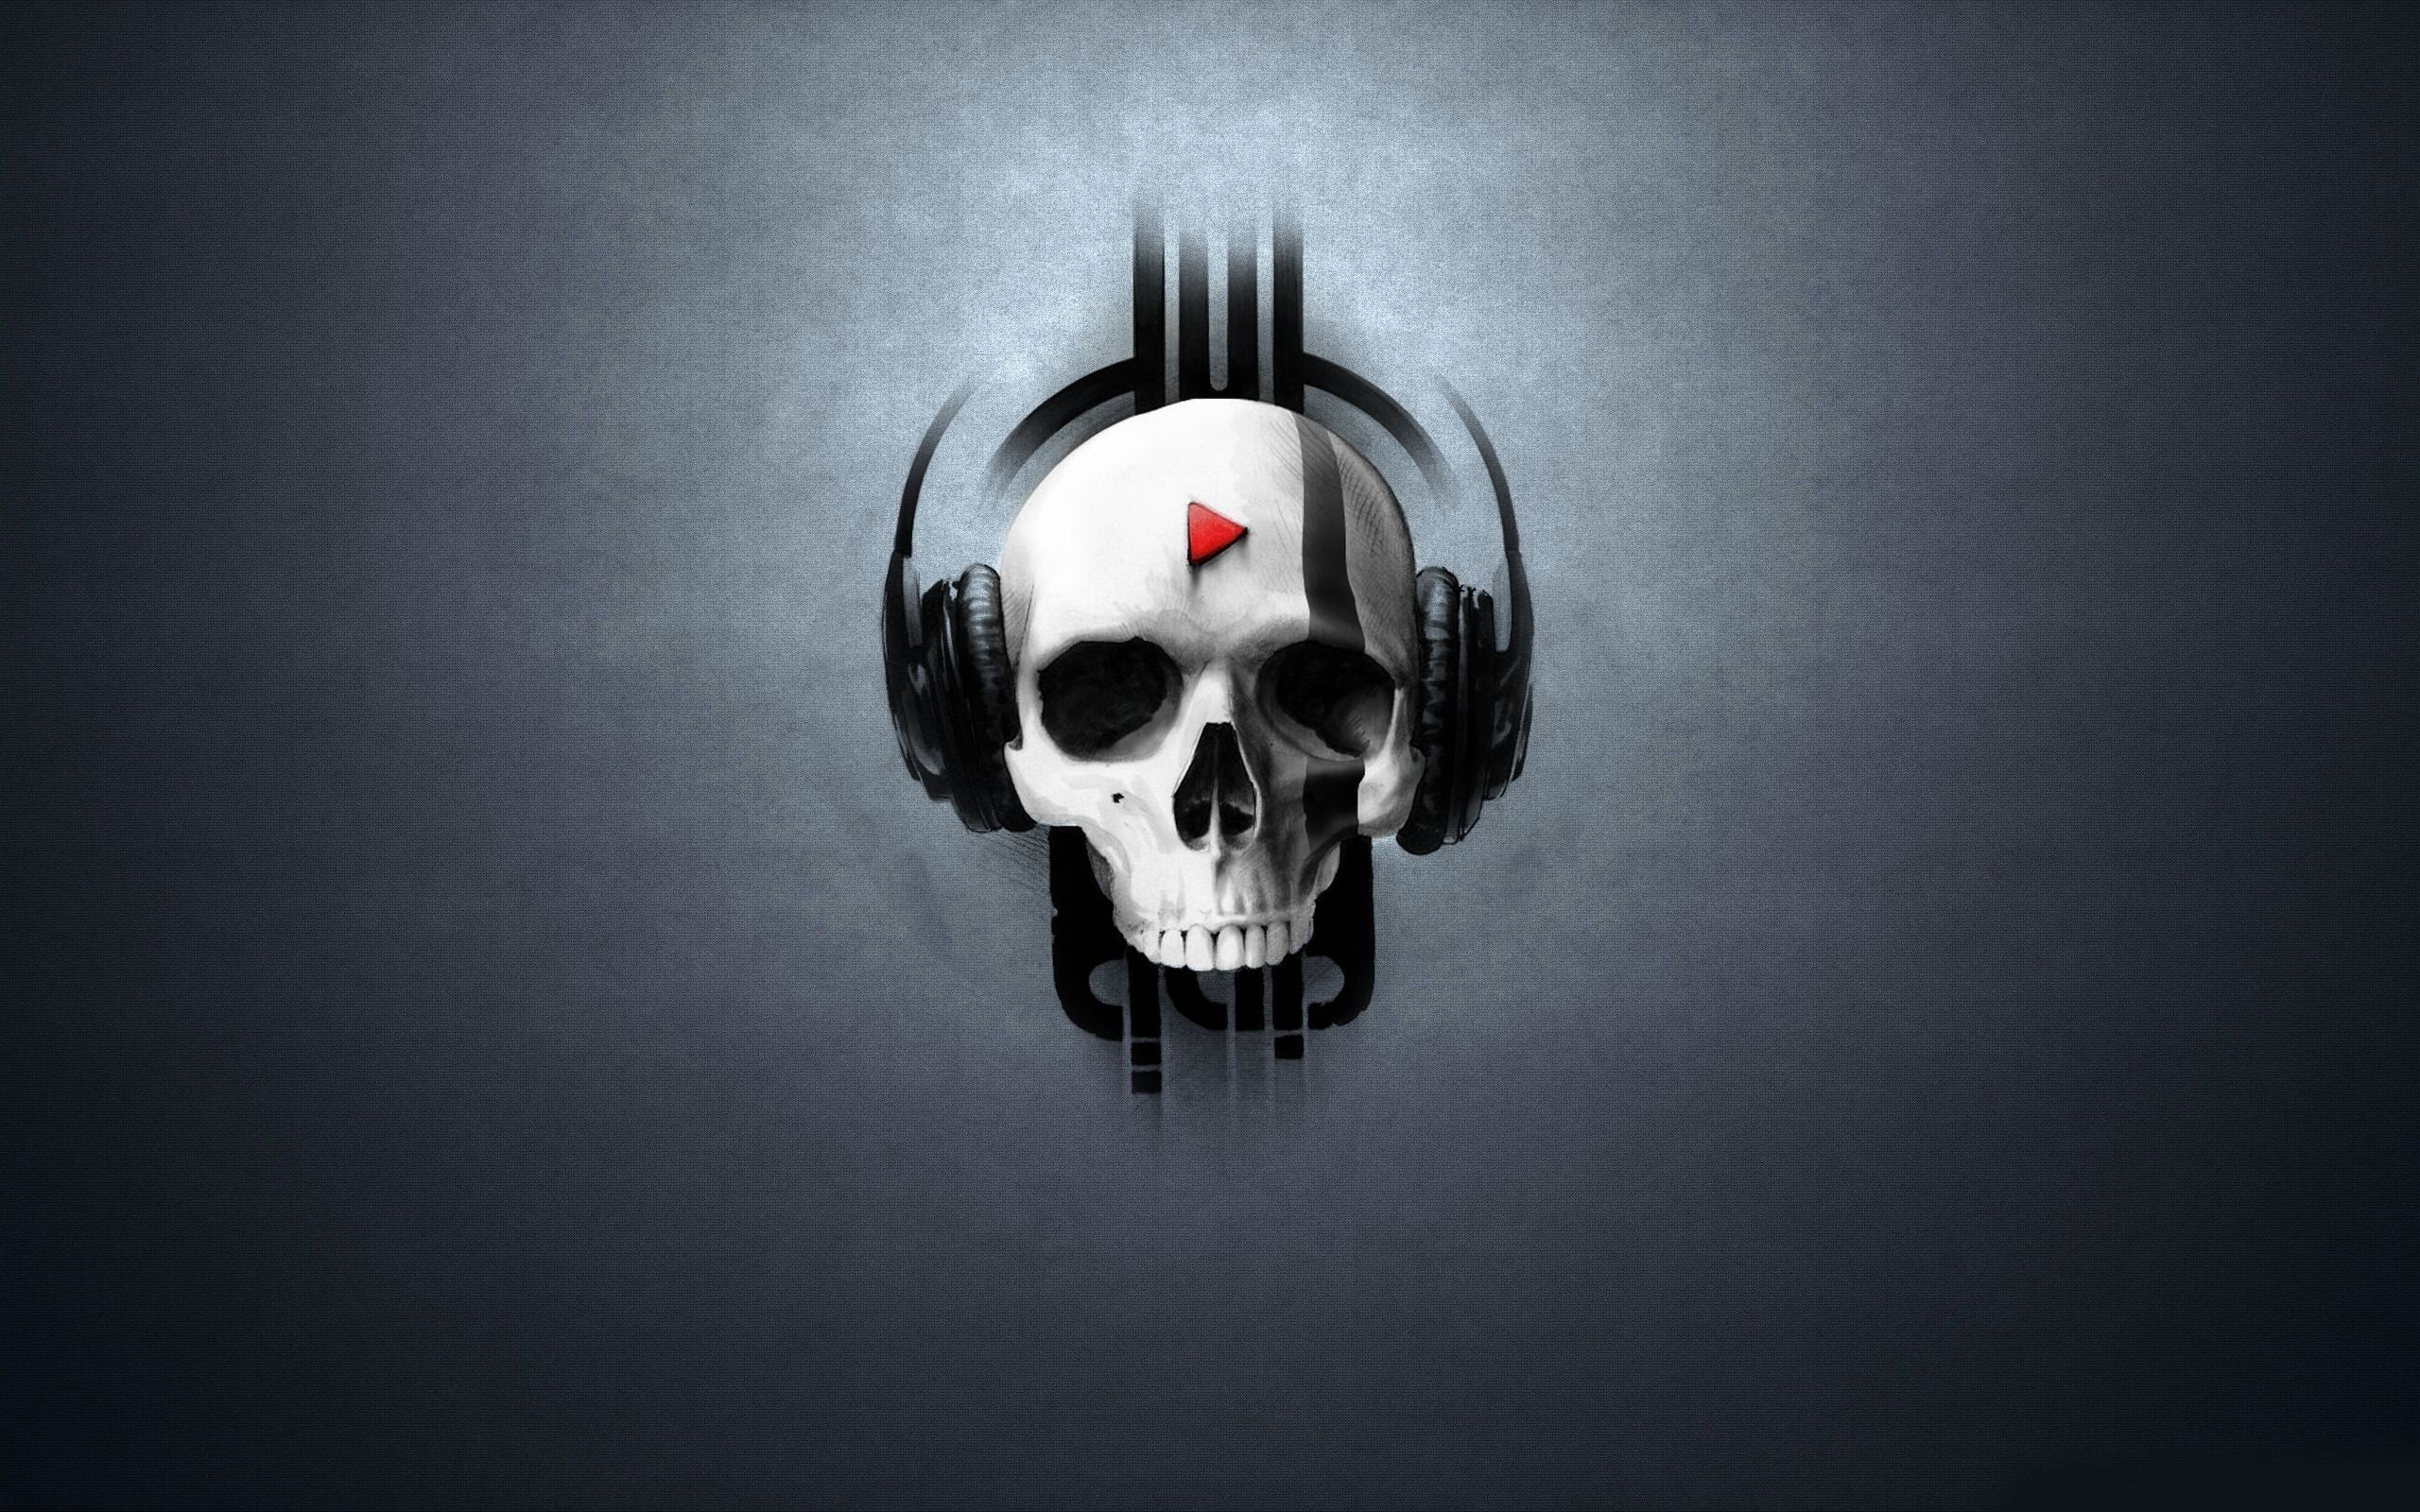 white and black skull wearing headphones wallpaper, digital art